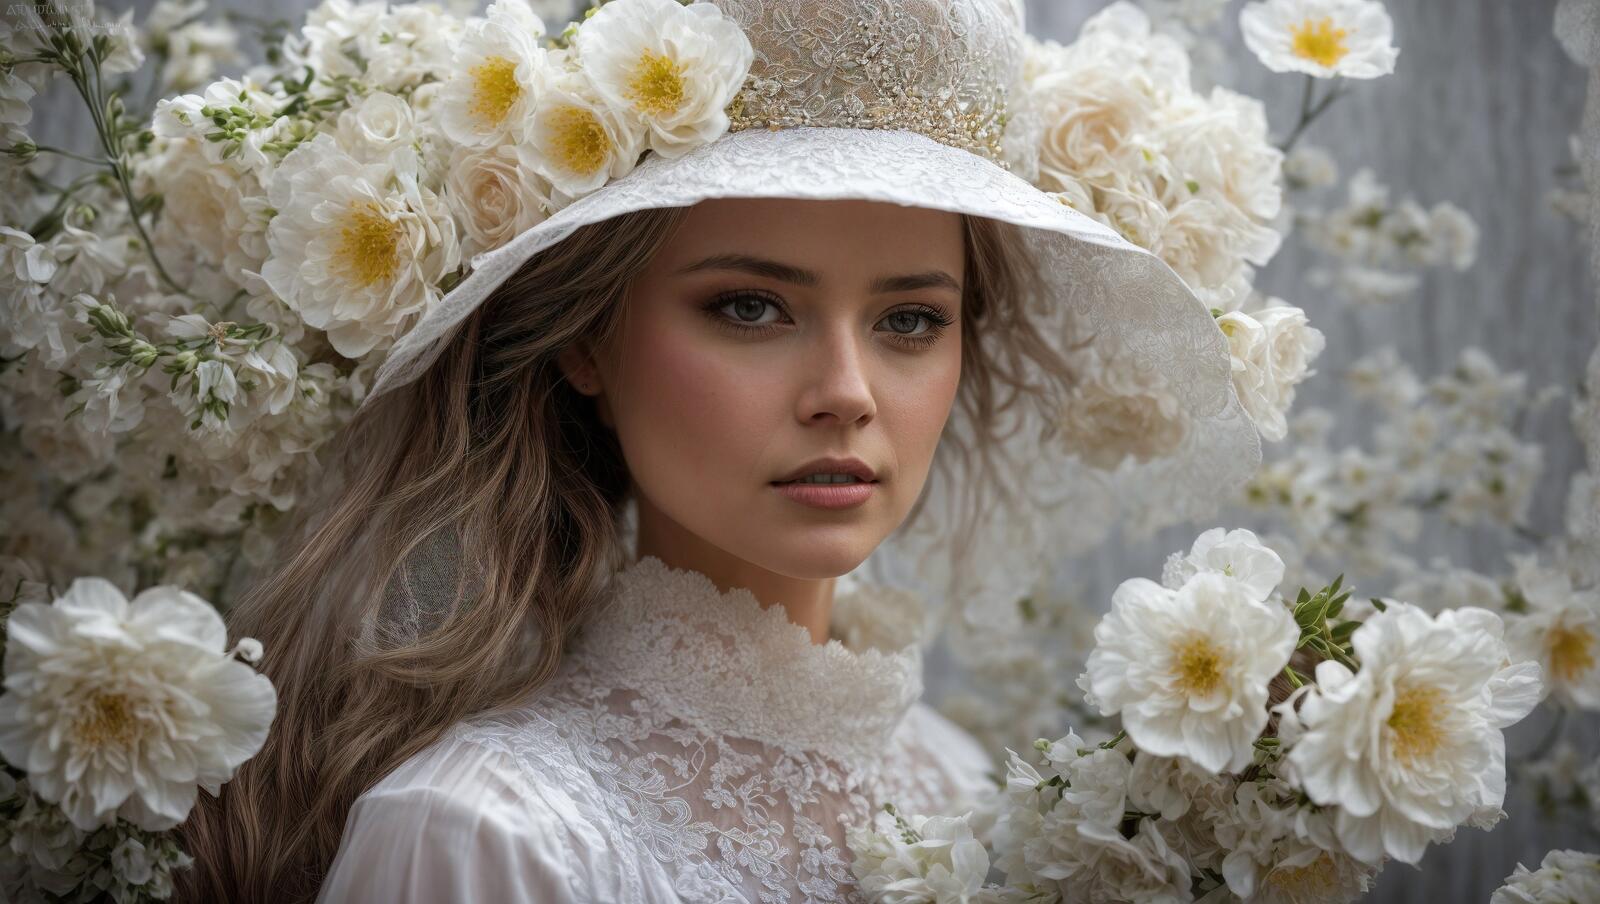 Бесплатное фото Женщина в белой шляпе с длинными косами, платье и цветы